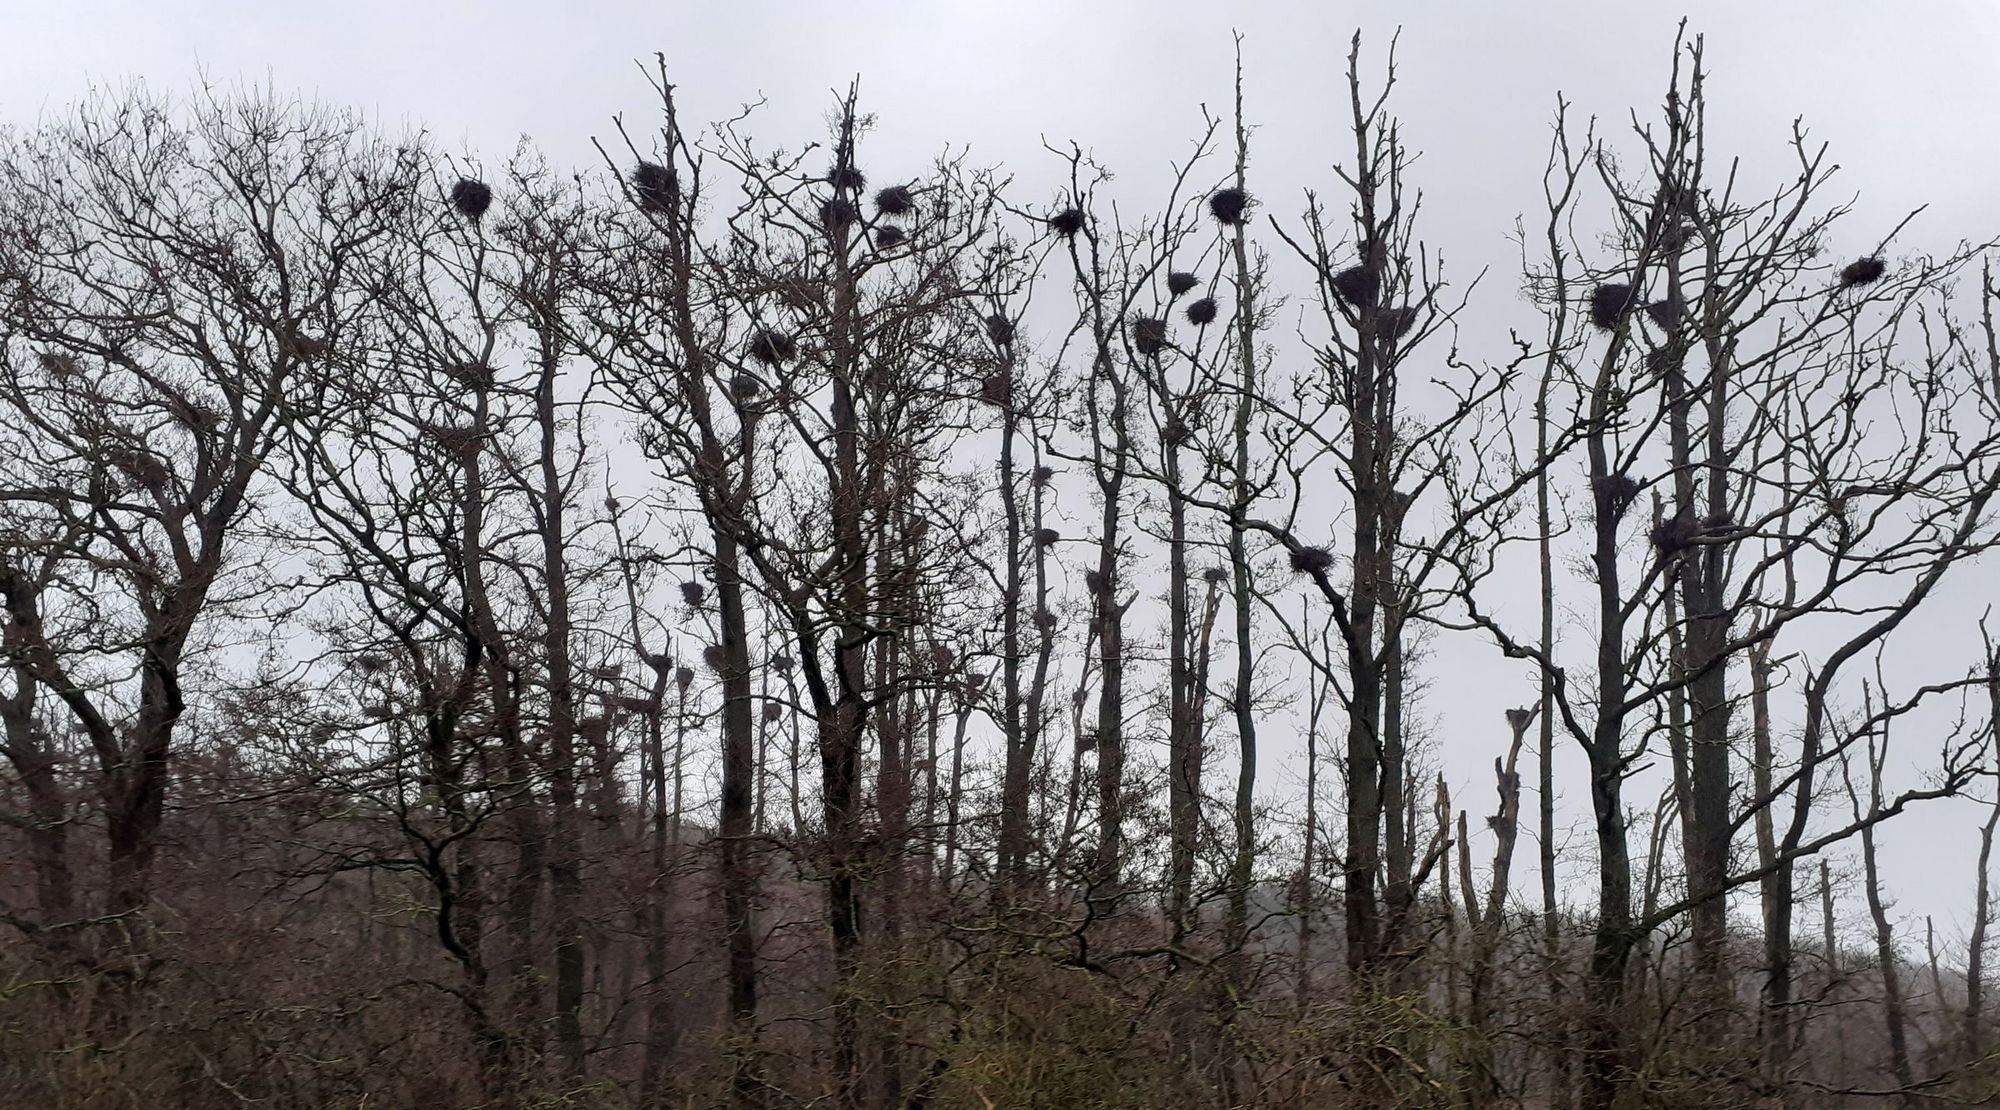 Baumreihe mit Kormorannestern an einem trüben Tag, im Hintergrund Wald